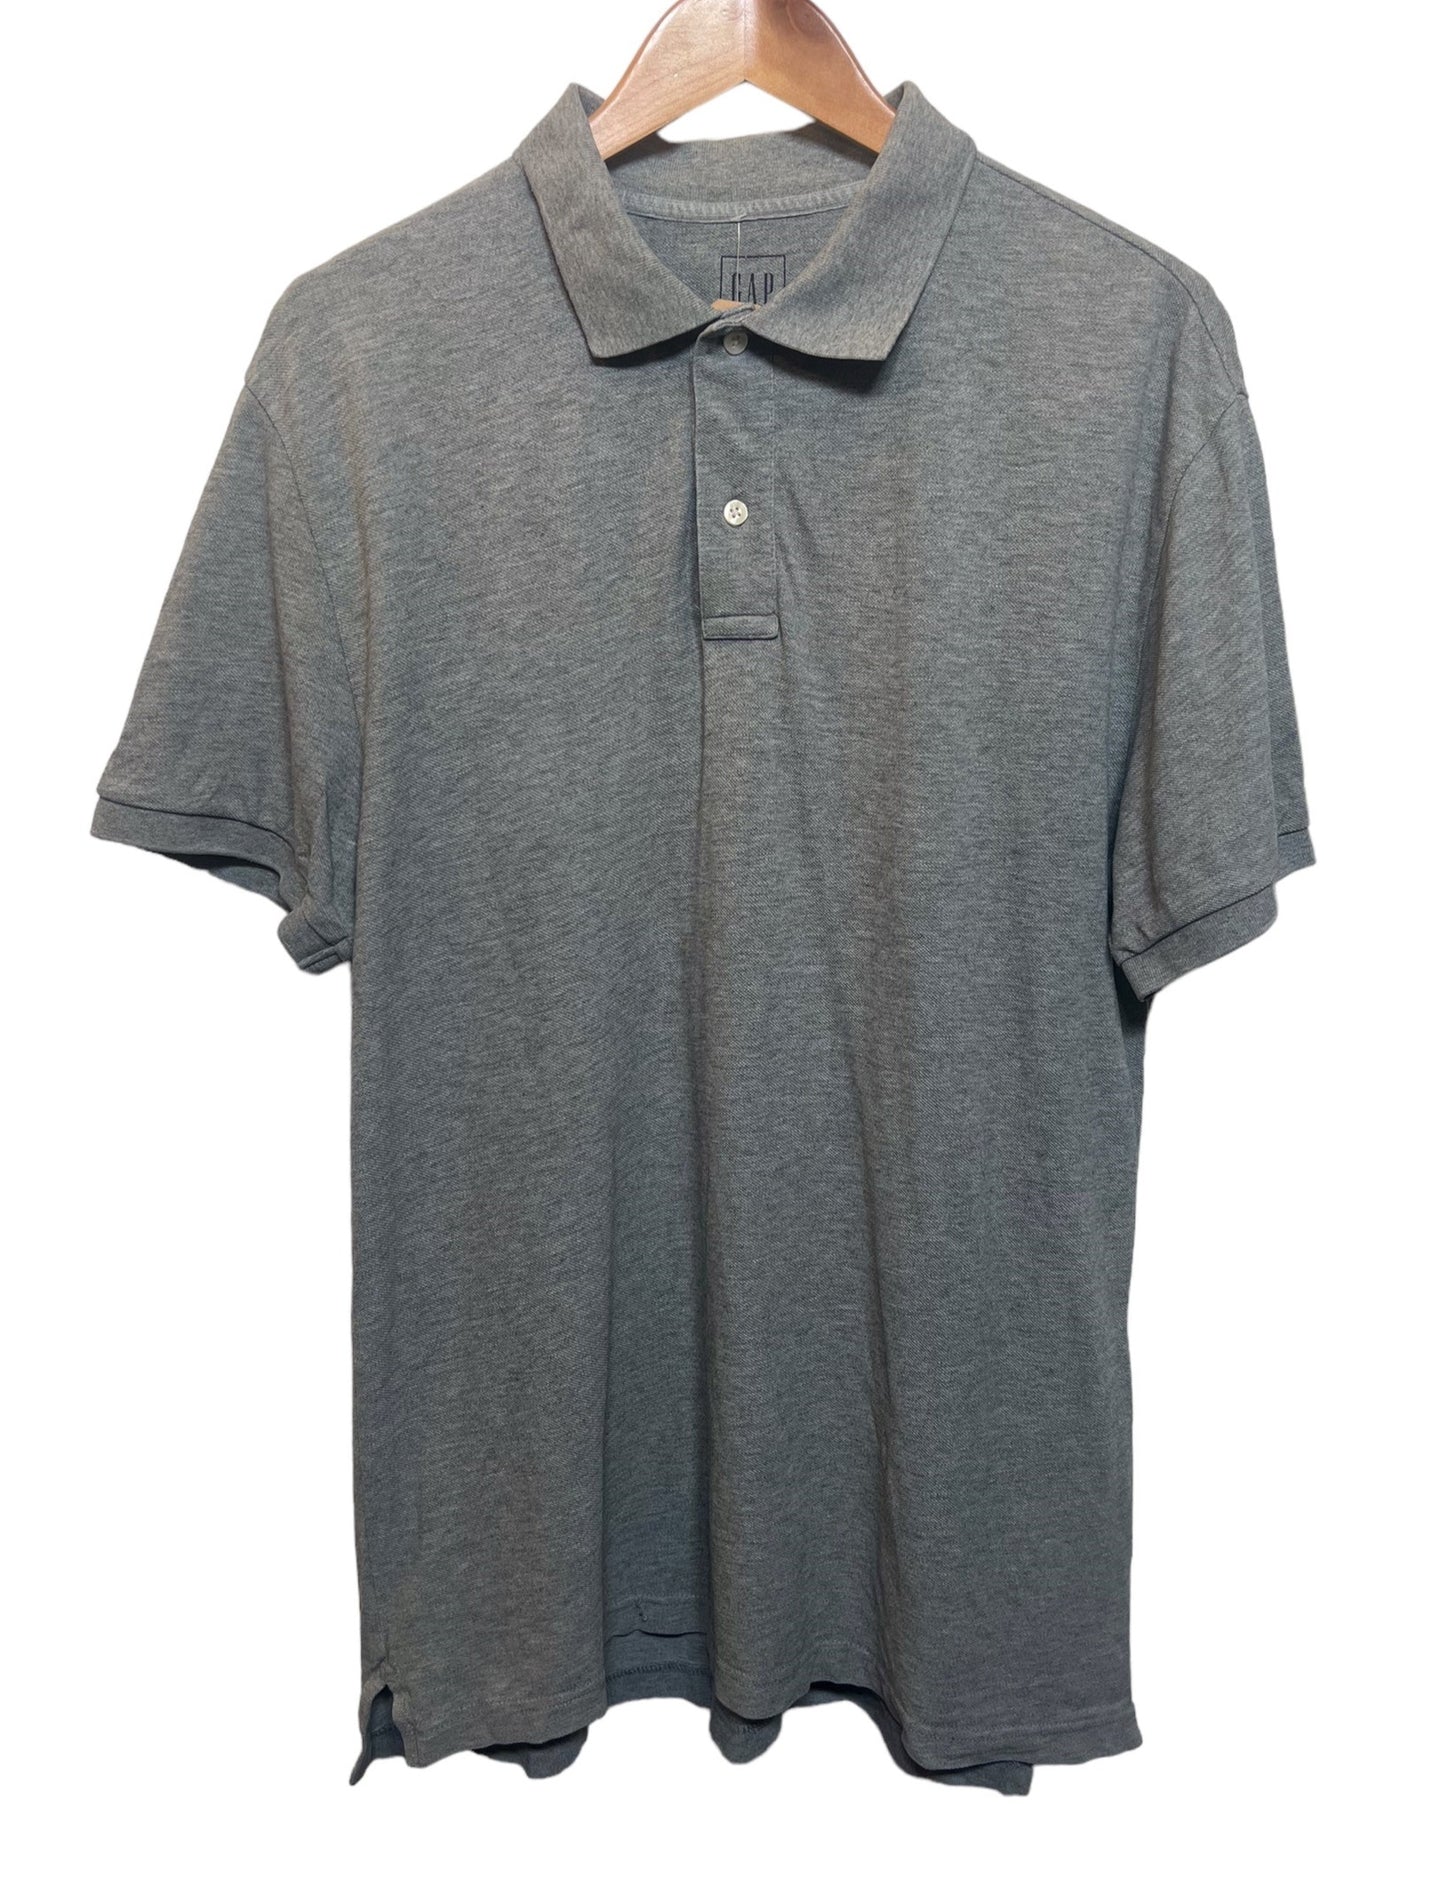 Vintage Gap Grey Polo T Shirt (Size L)